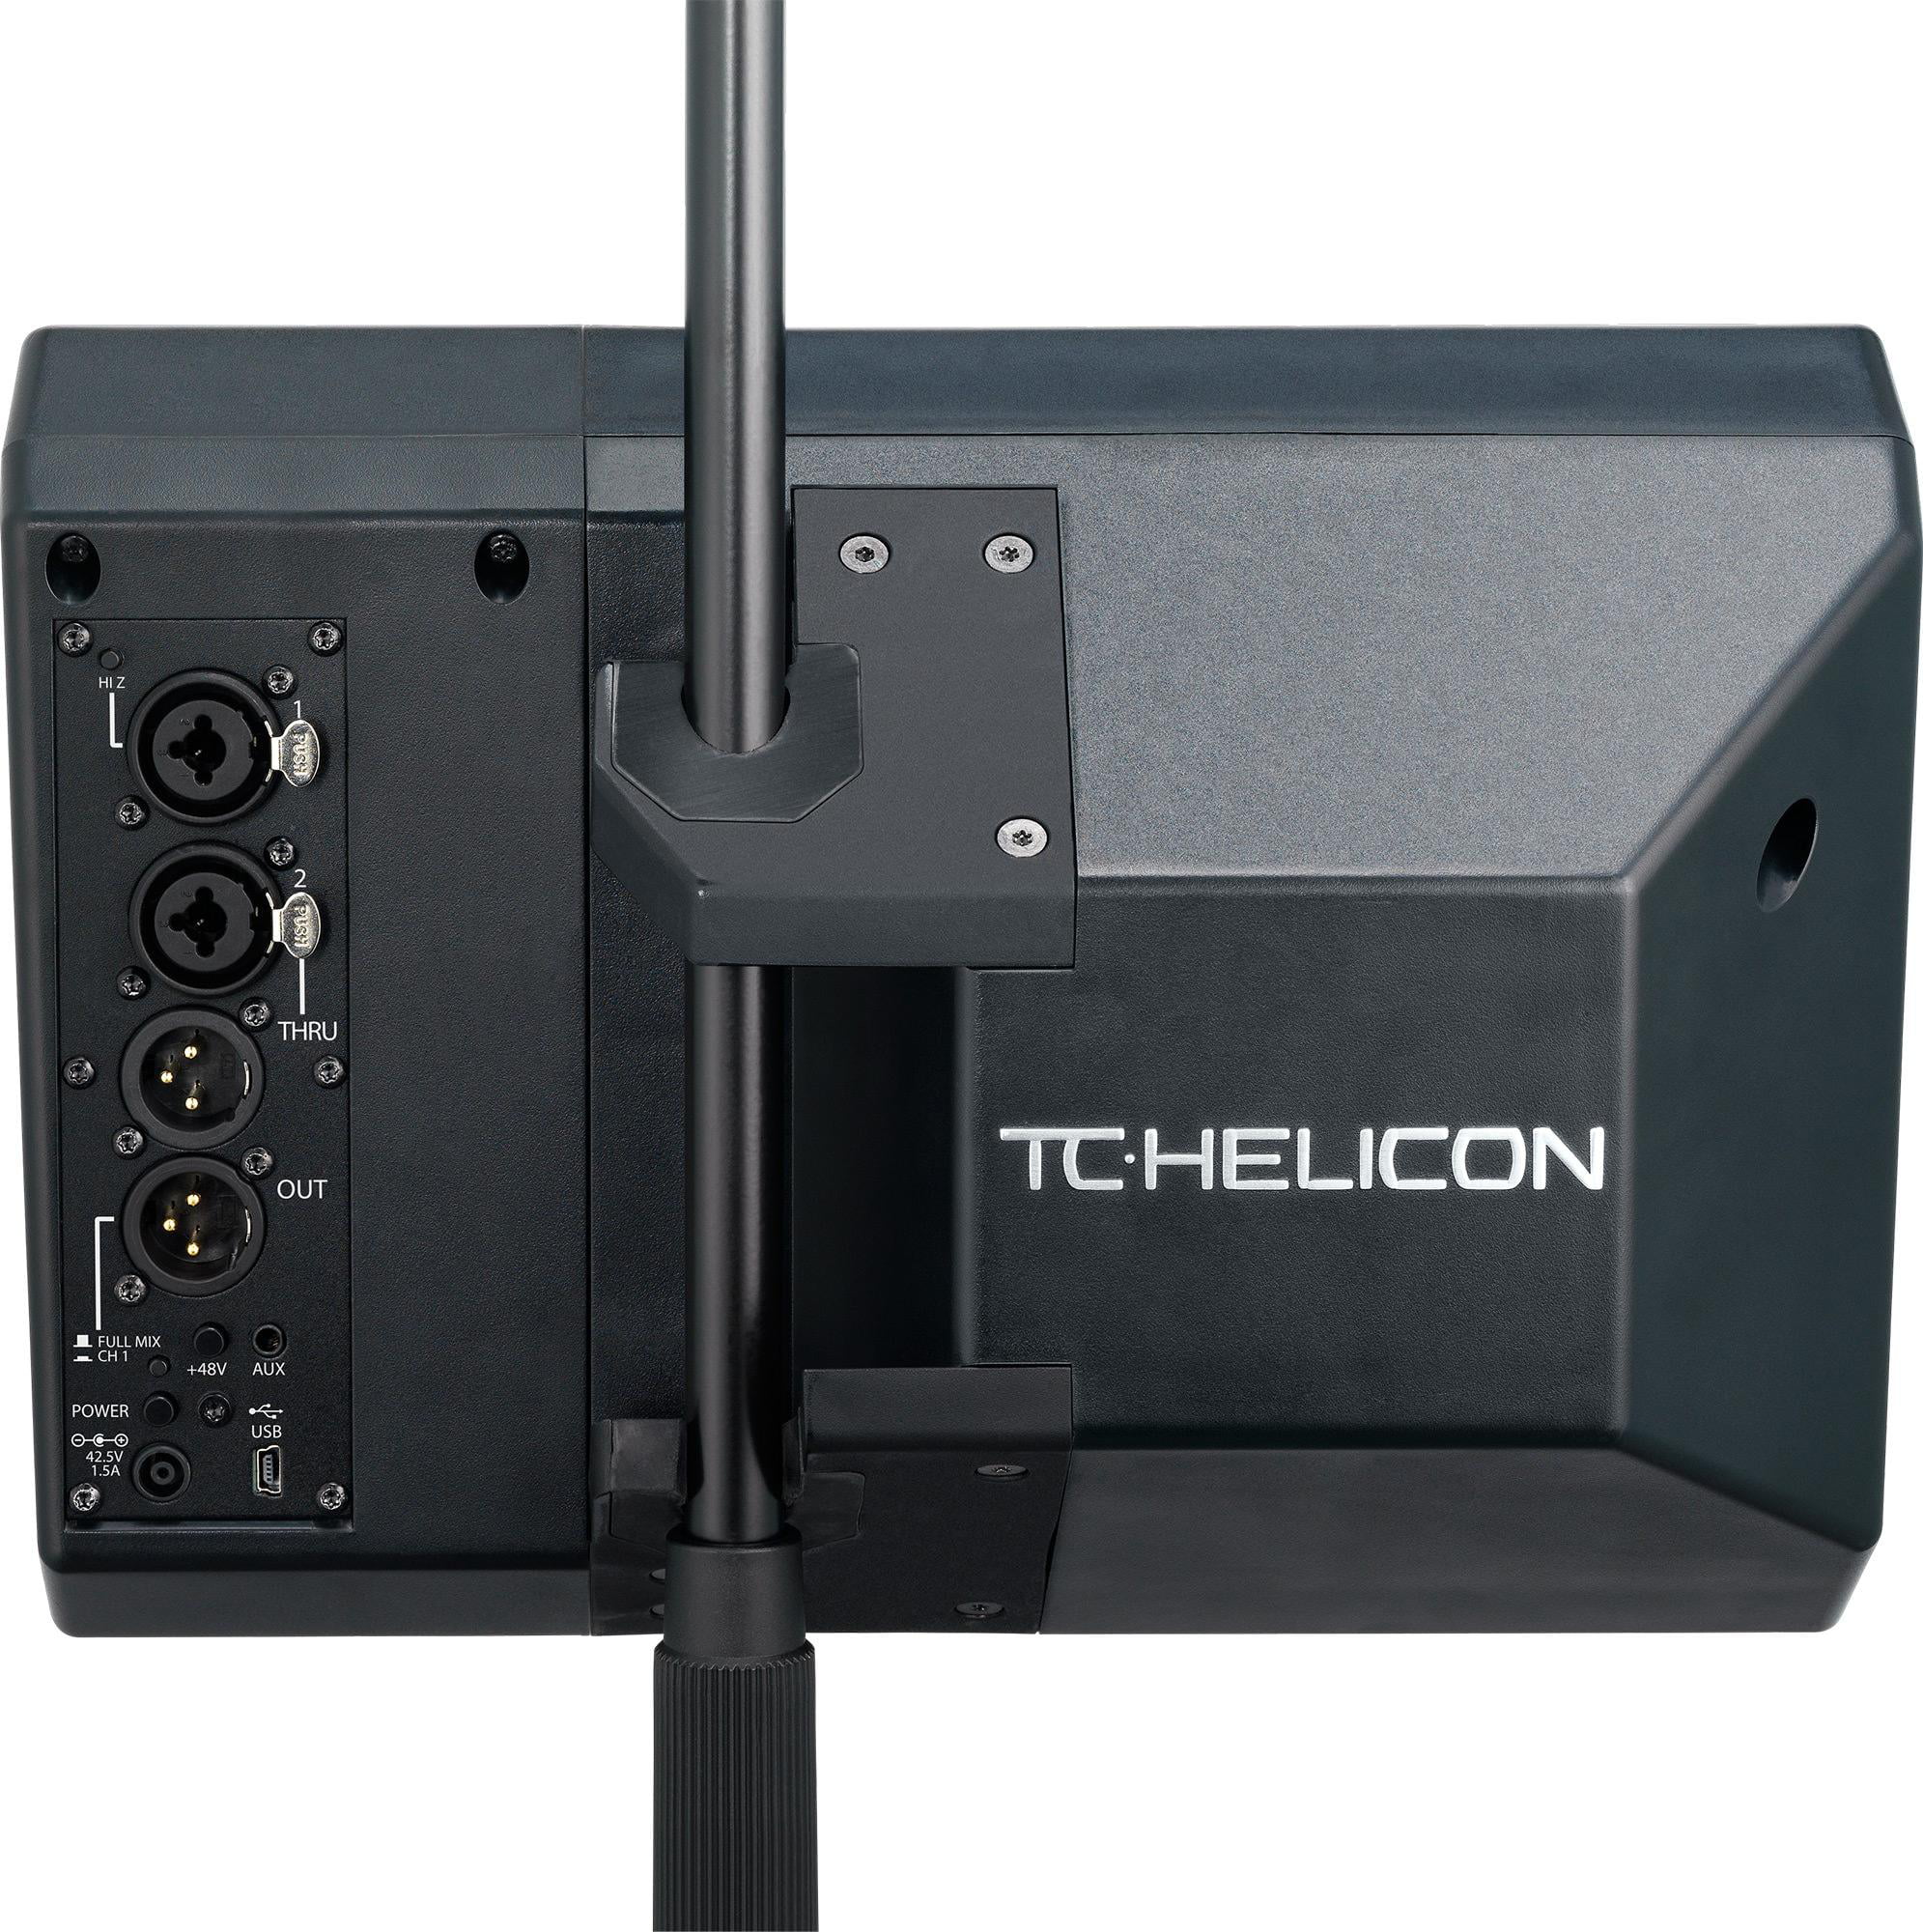 TC Helicon - VoiceSolo FX150 - Monitor - Walmart.com